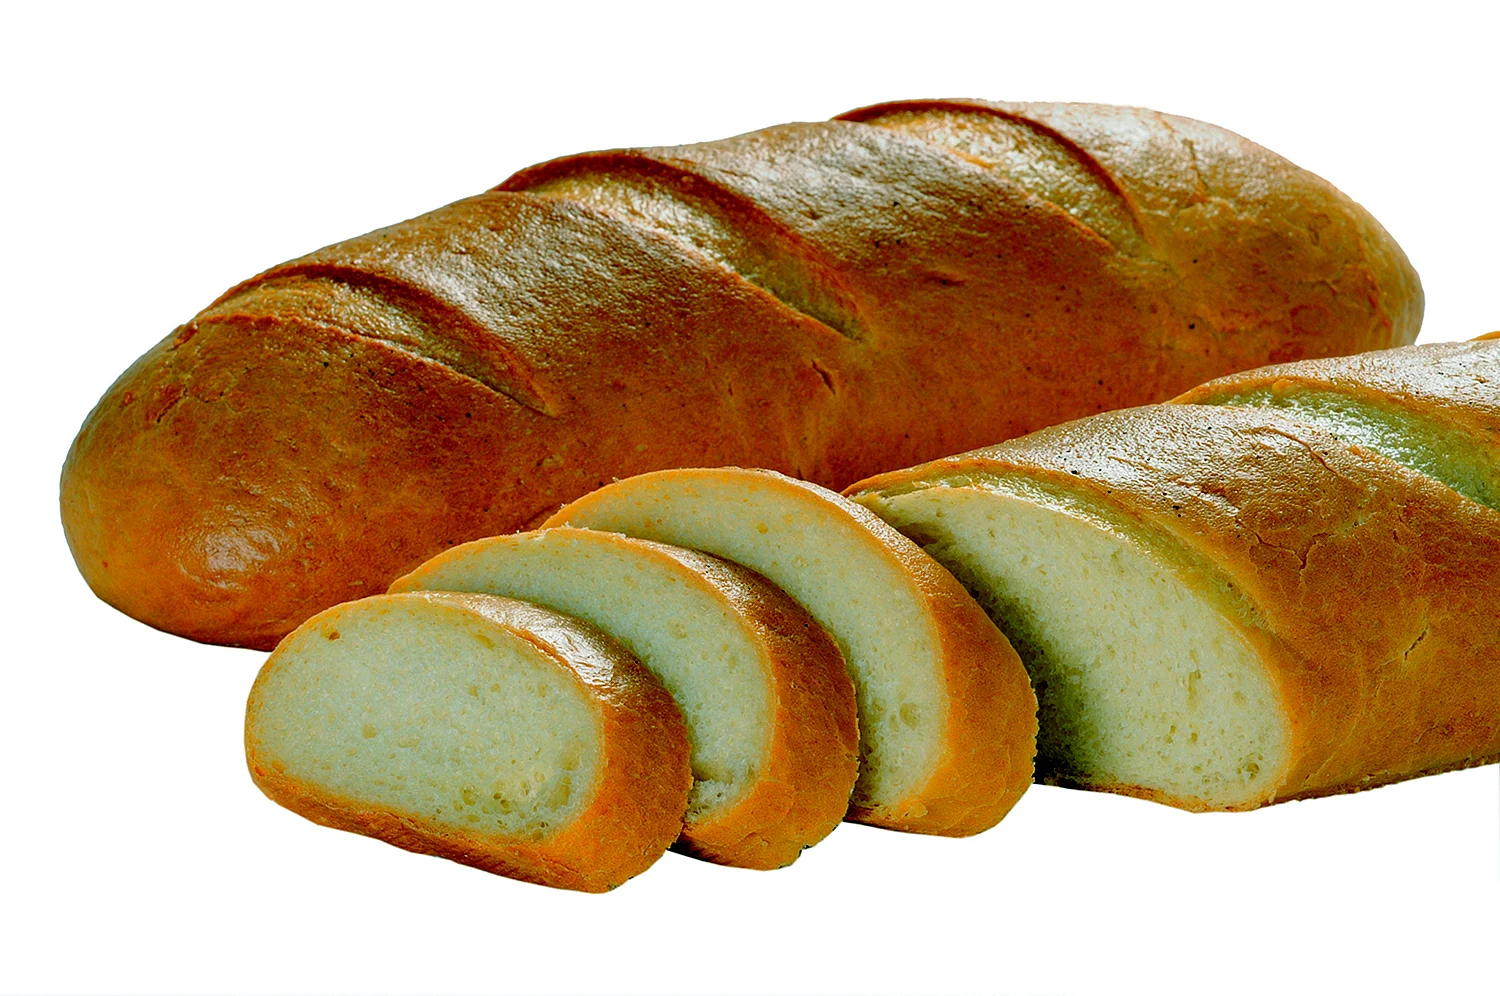 Батон хлеба